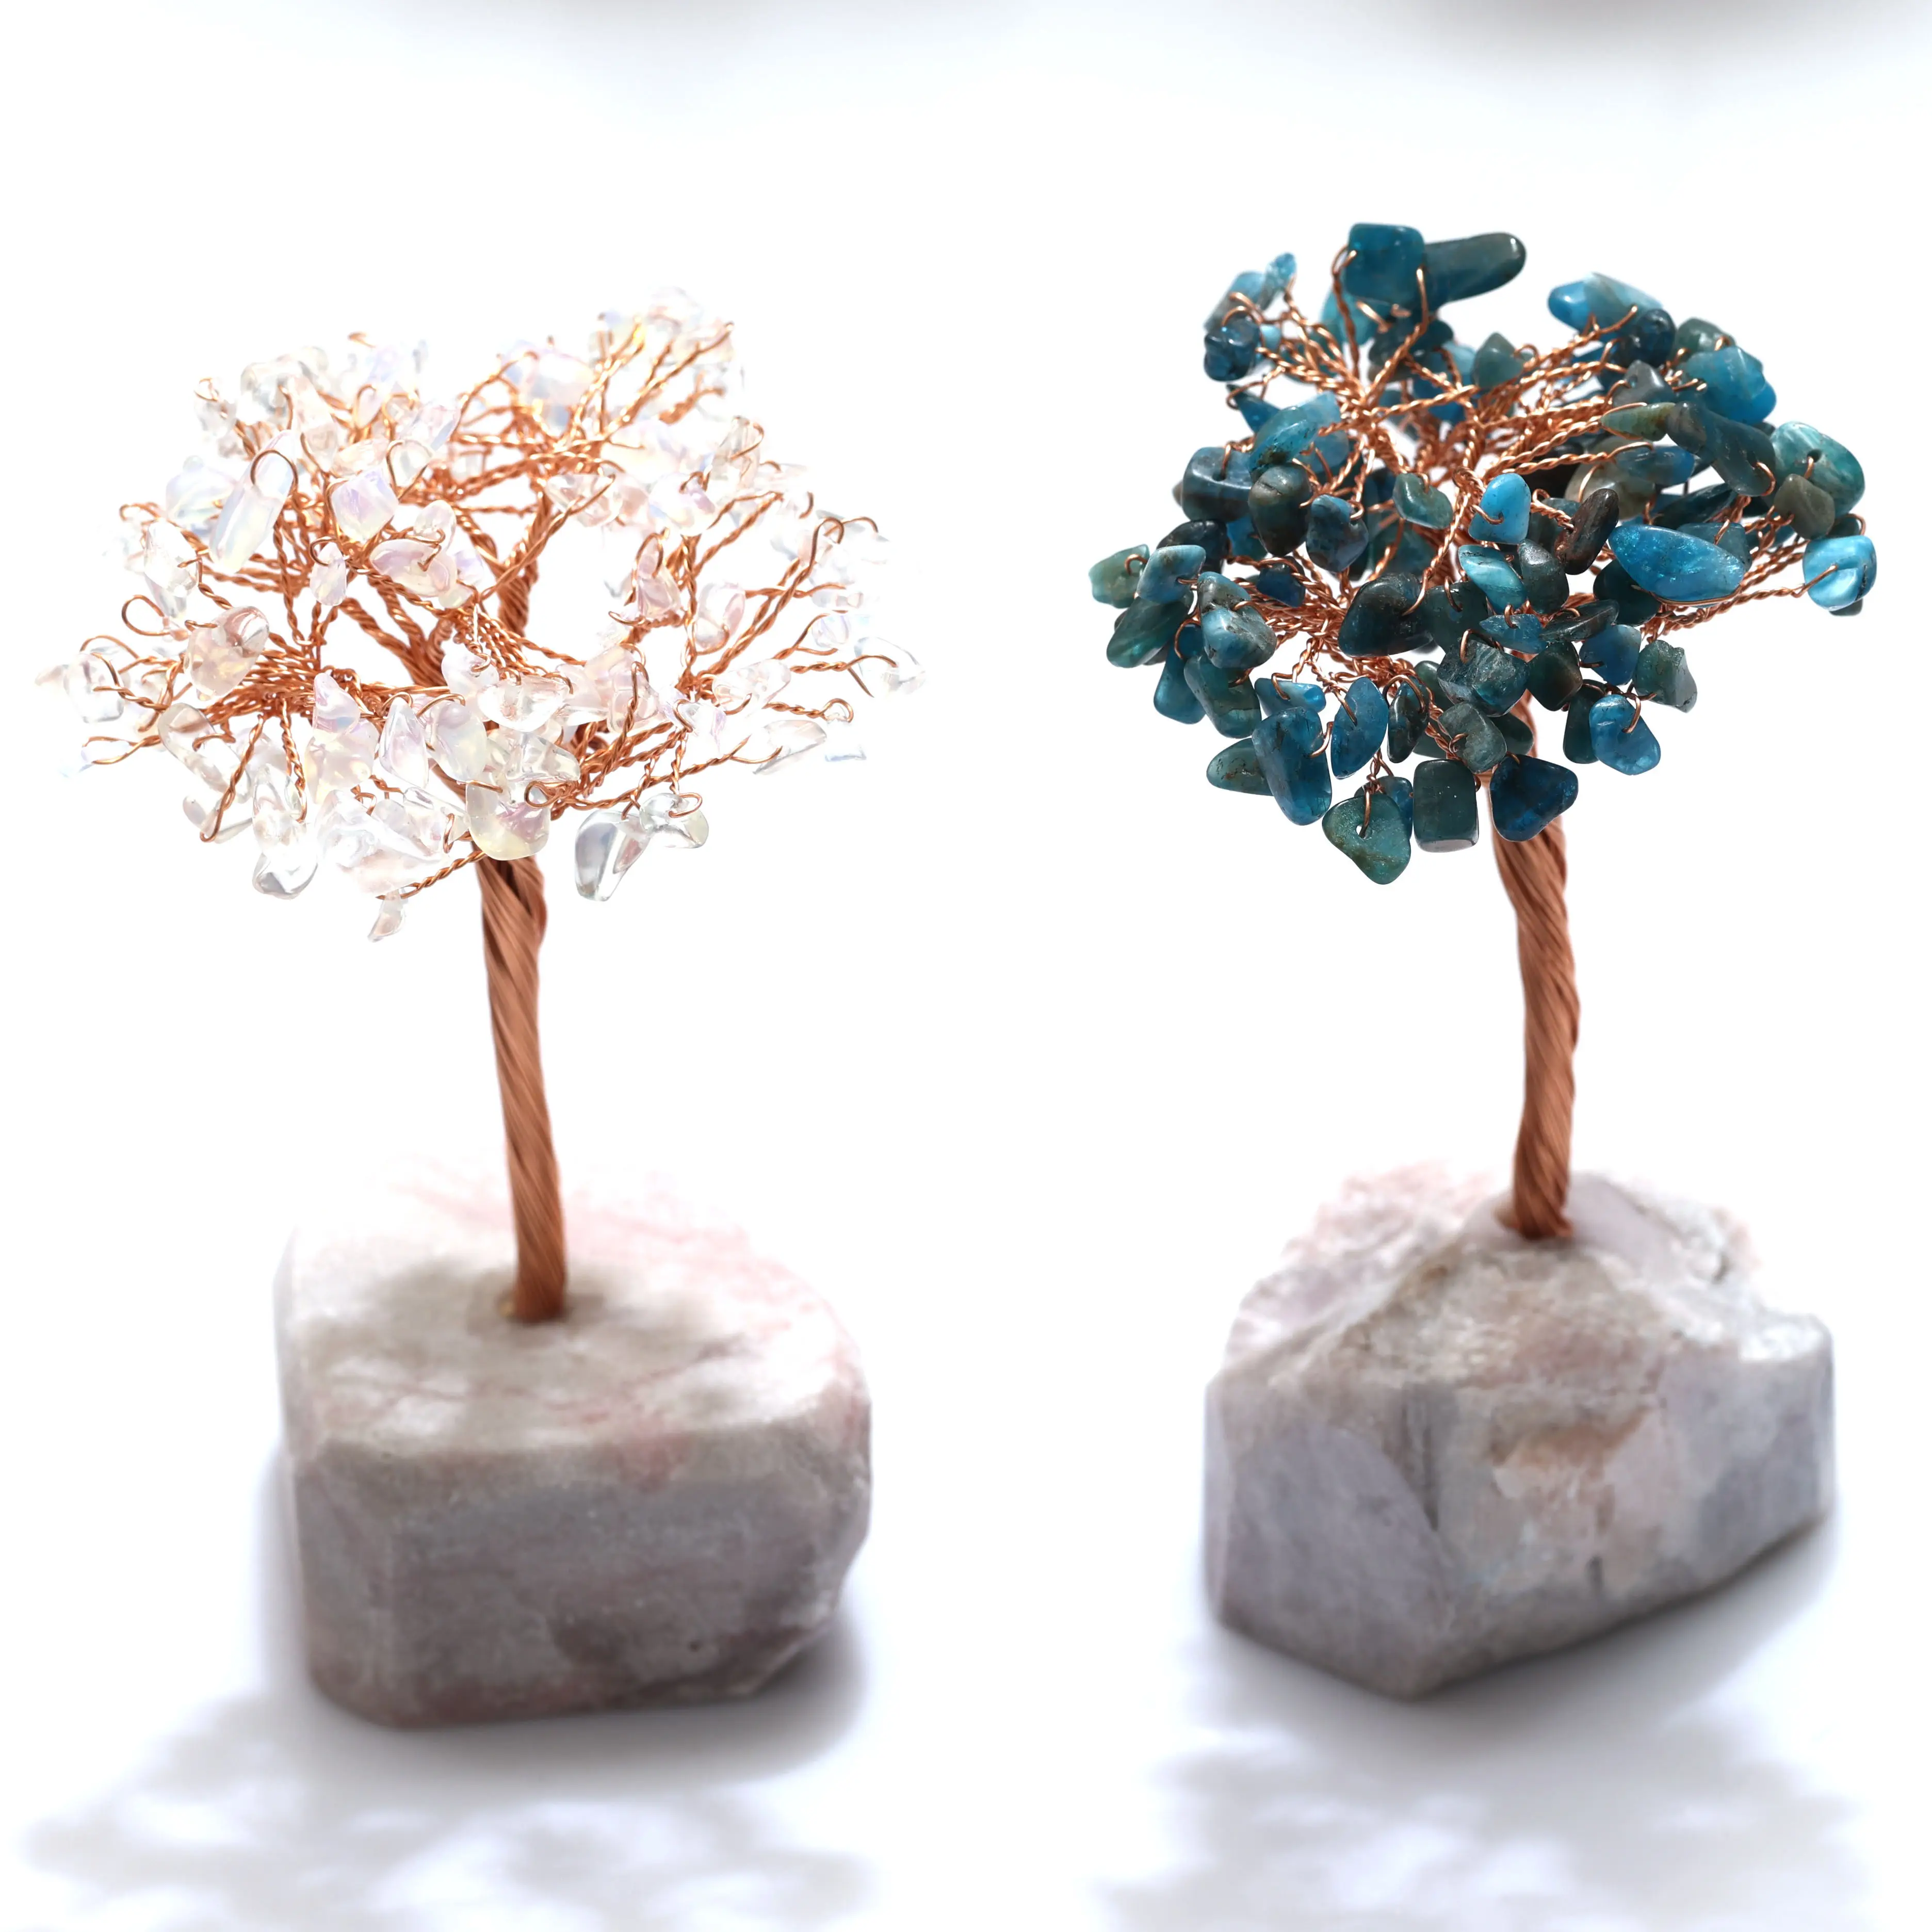 Piedras semipreciosas artesanales, alambre de cobre, adorno de cristal, árbol de cristal para decoración del hogar